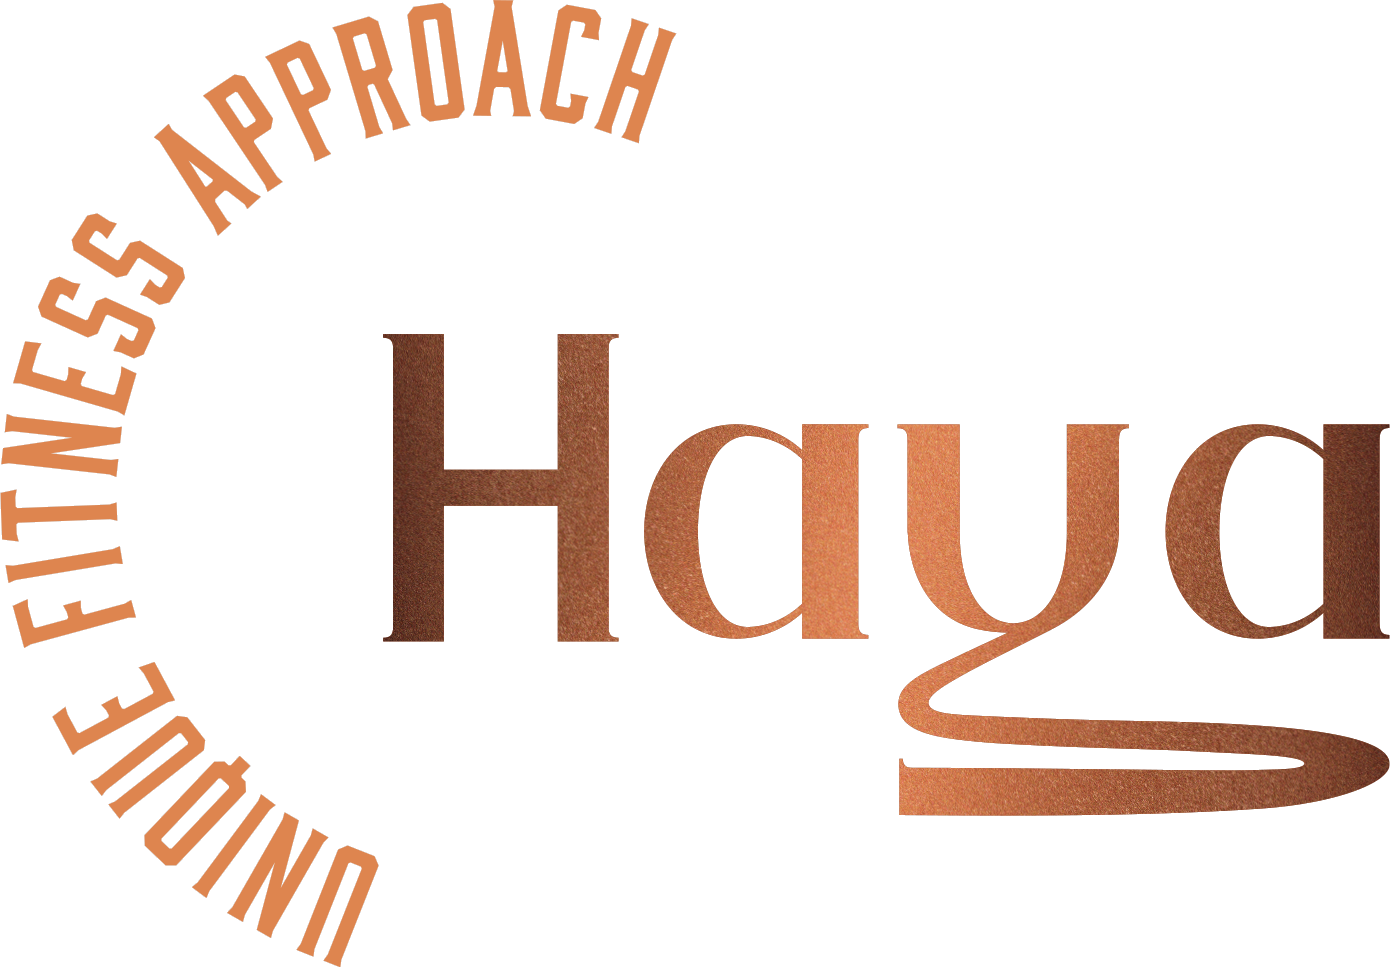 haya - Branding, osobnost branda, Verbalni identitet, Vizualni identitet